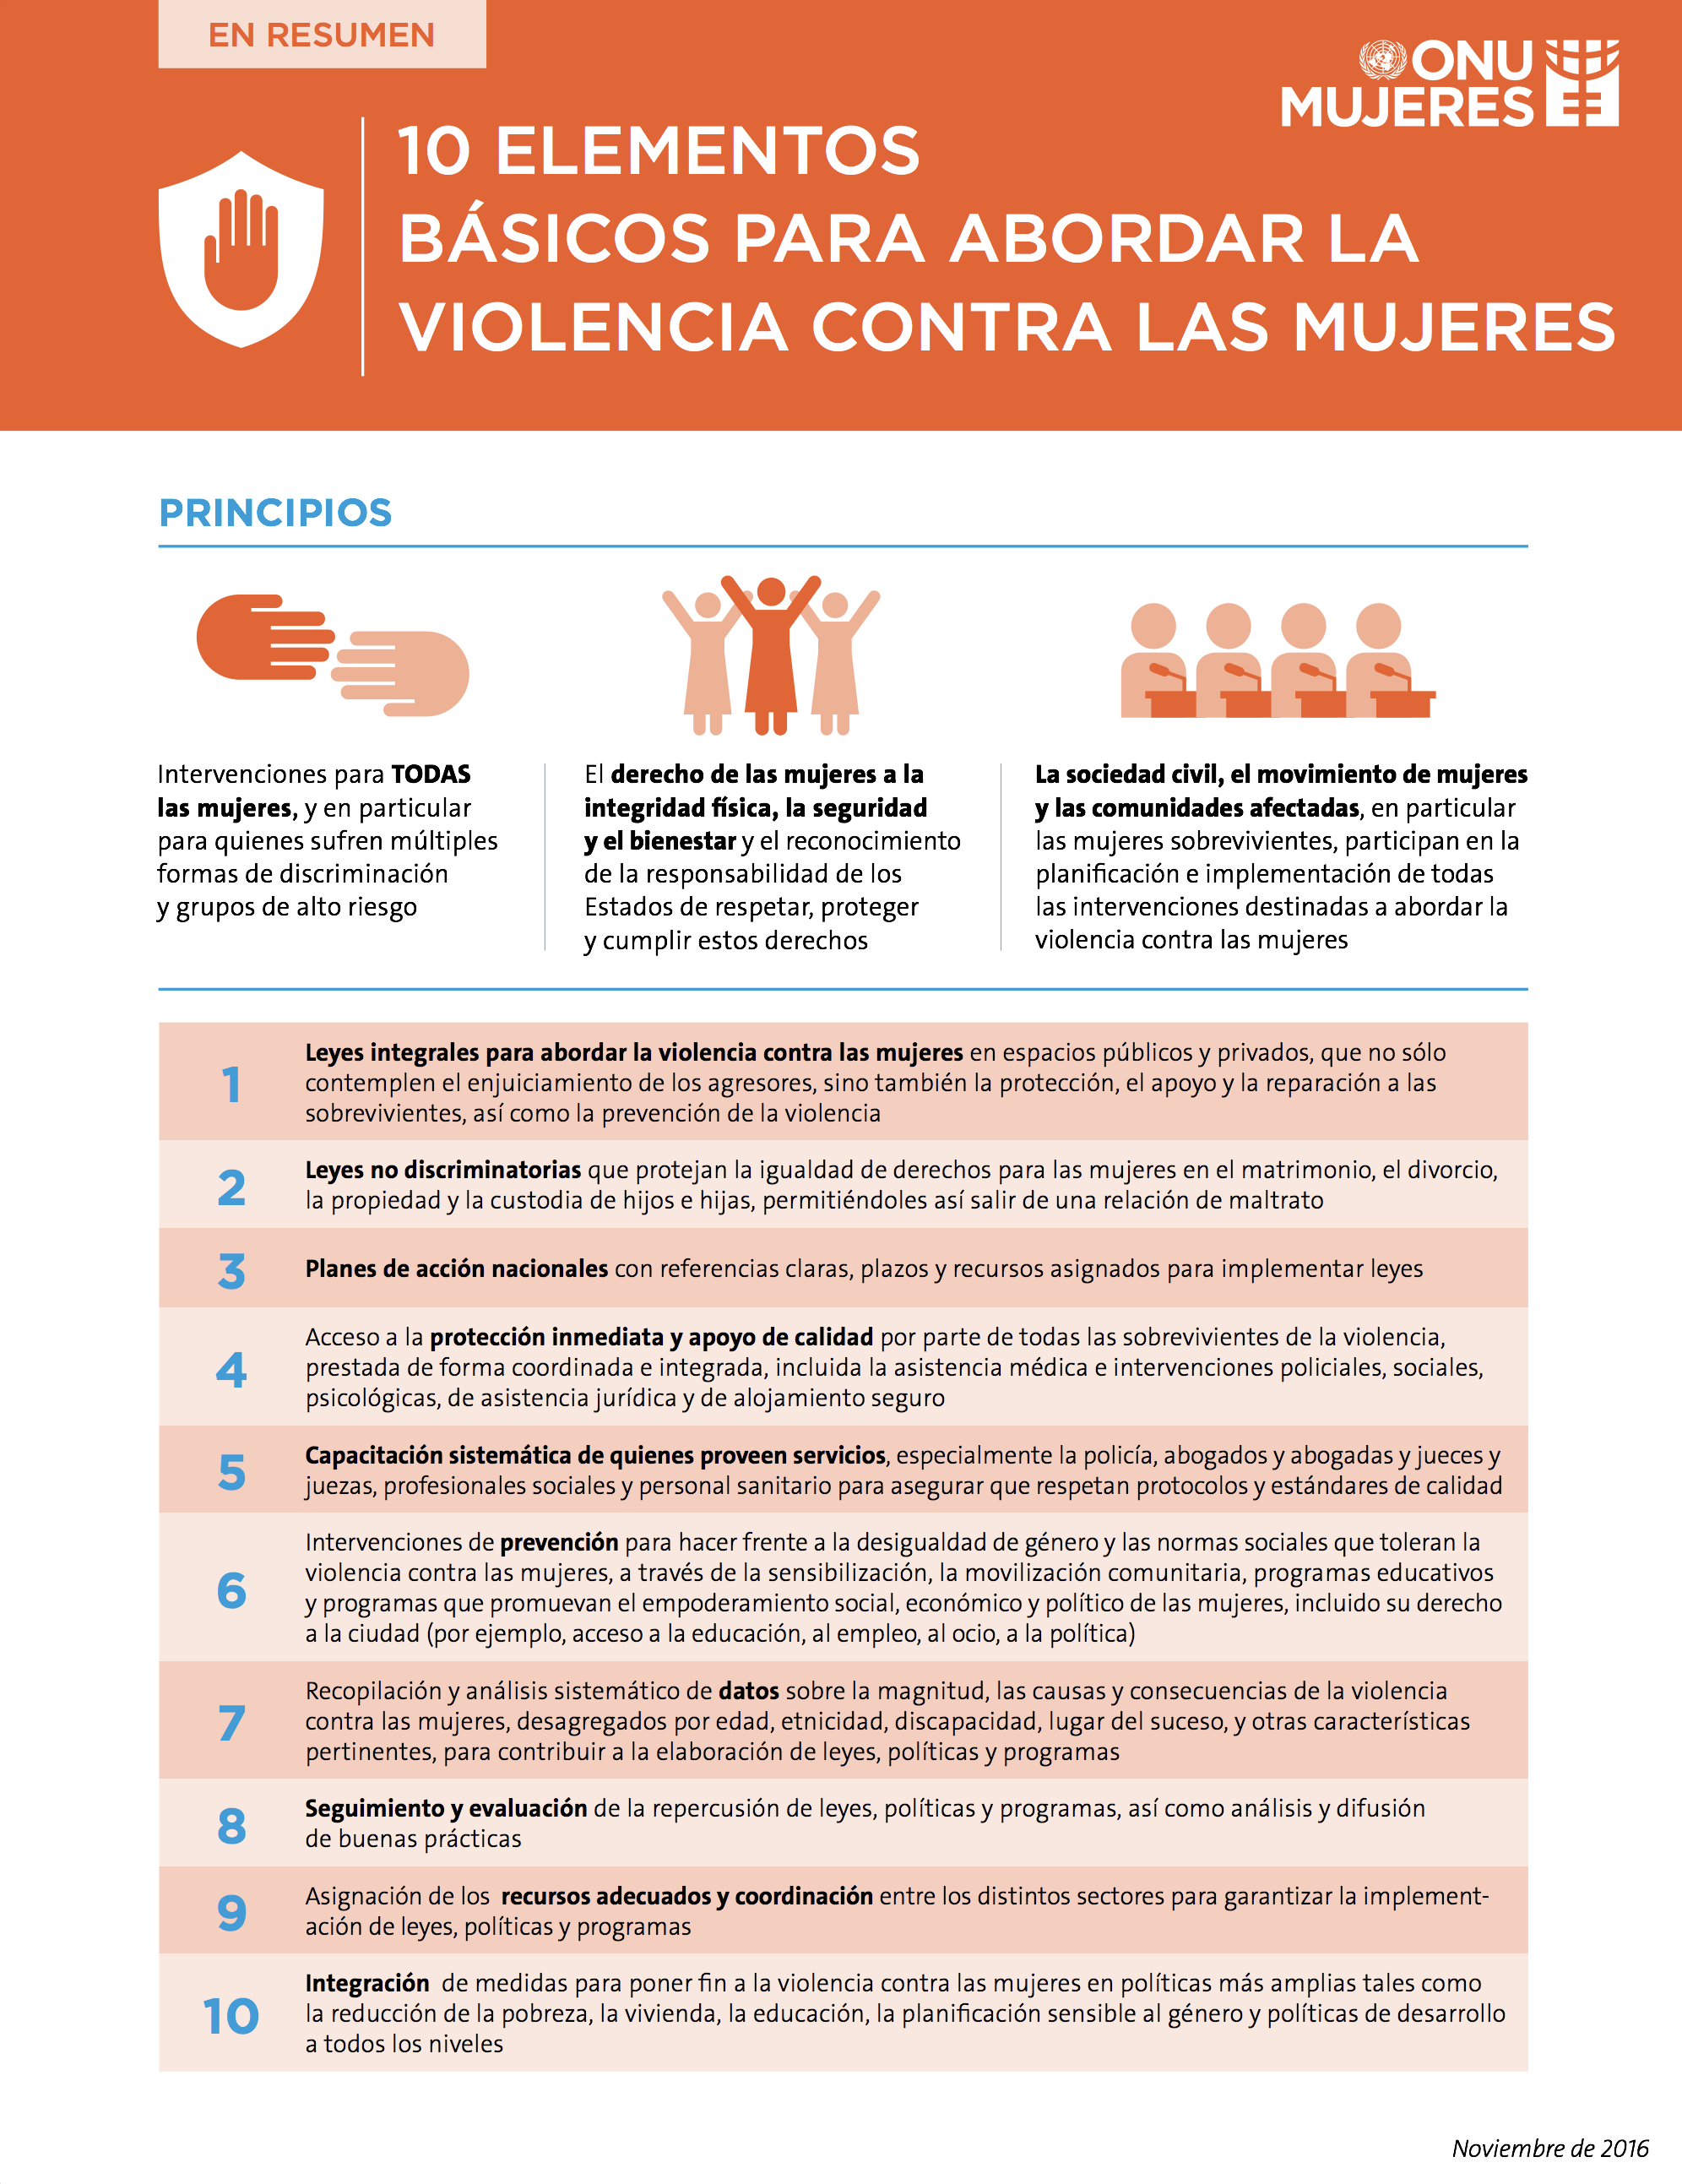 Paquete de elementos básicos para abordar la violencia contra las mujeres